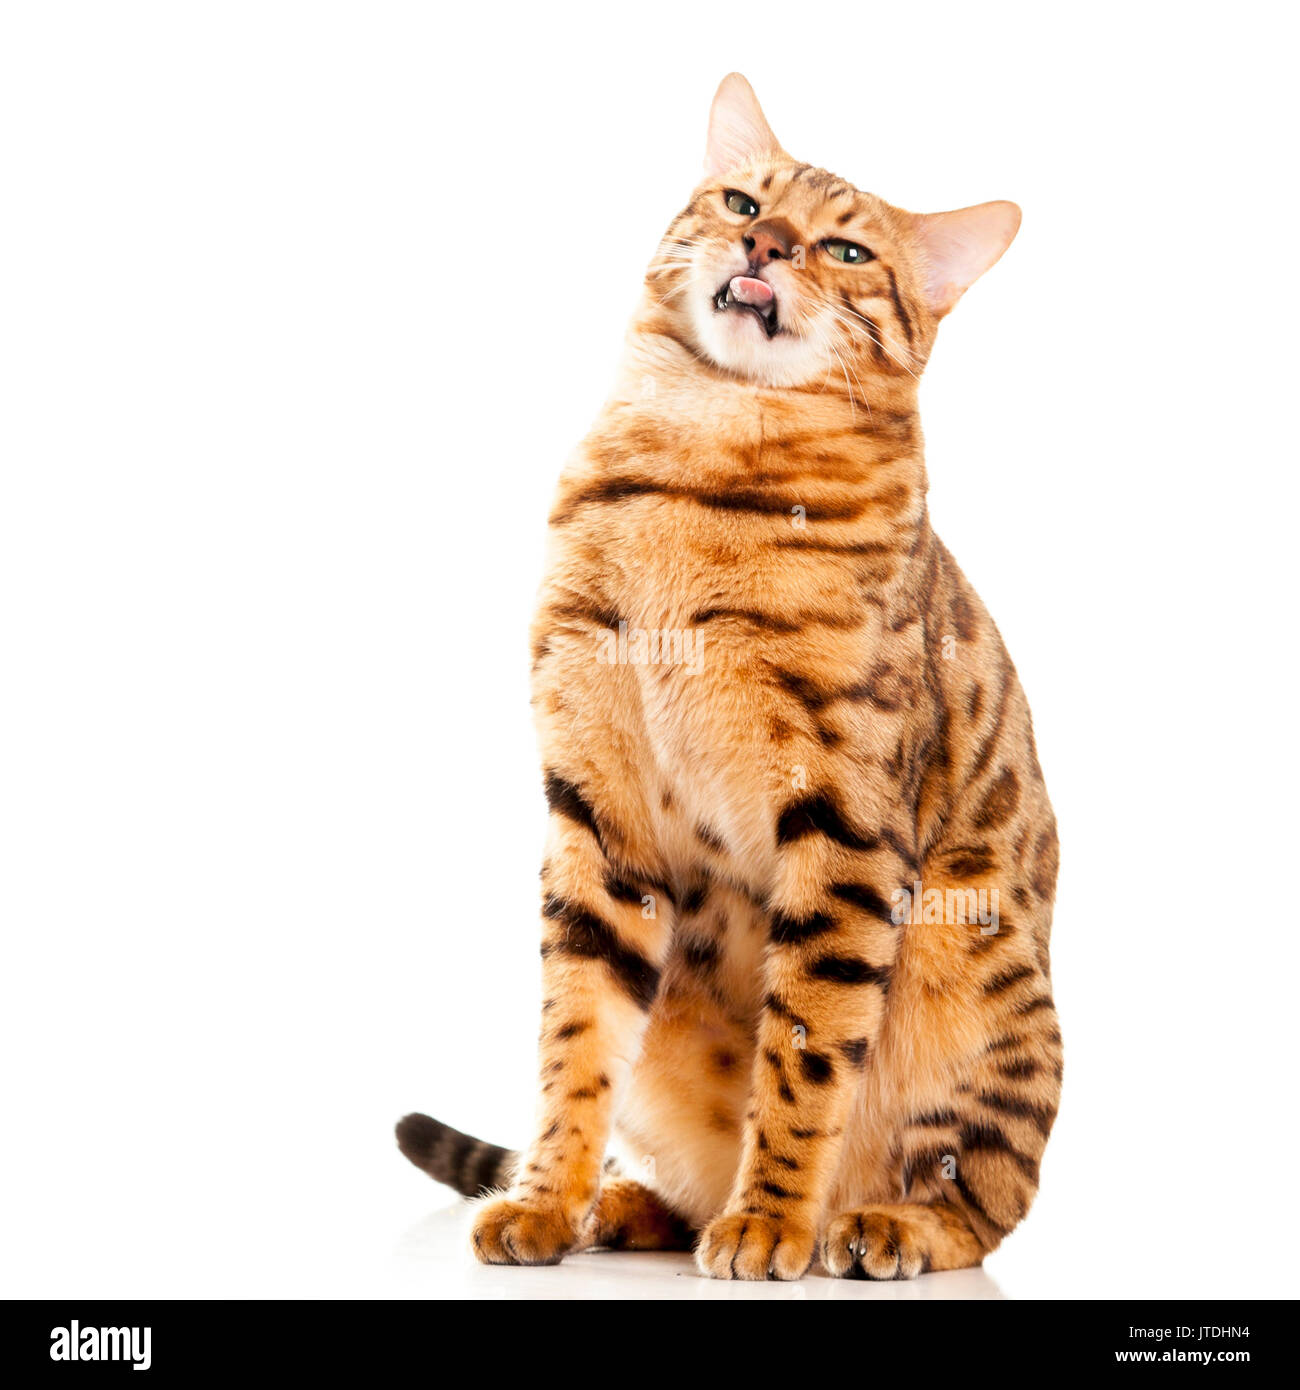 Komisch und lustig, auf der Suche nach Bengal cat heraus haften Zunge Portrait auf weißem Hintergrund isoliert Model Release: Nein Property Release: Nein. Stockfoto